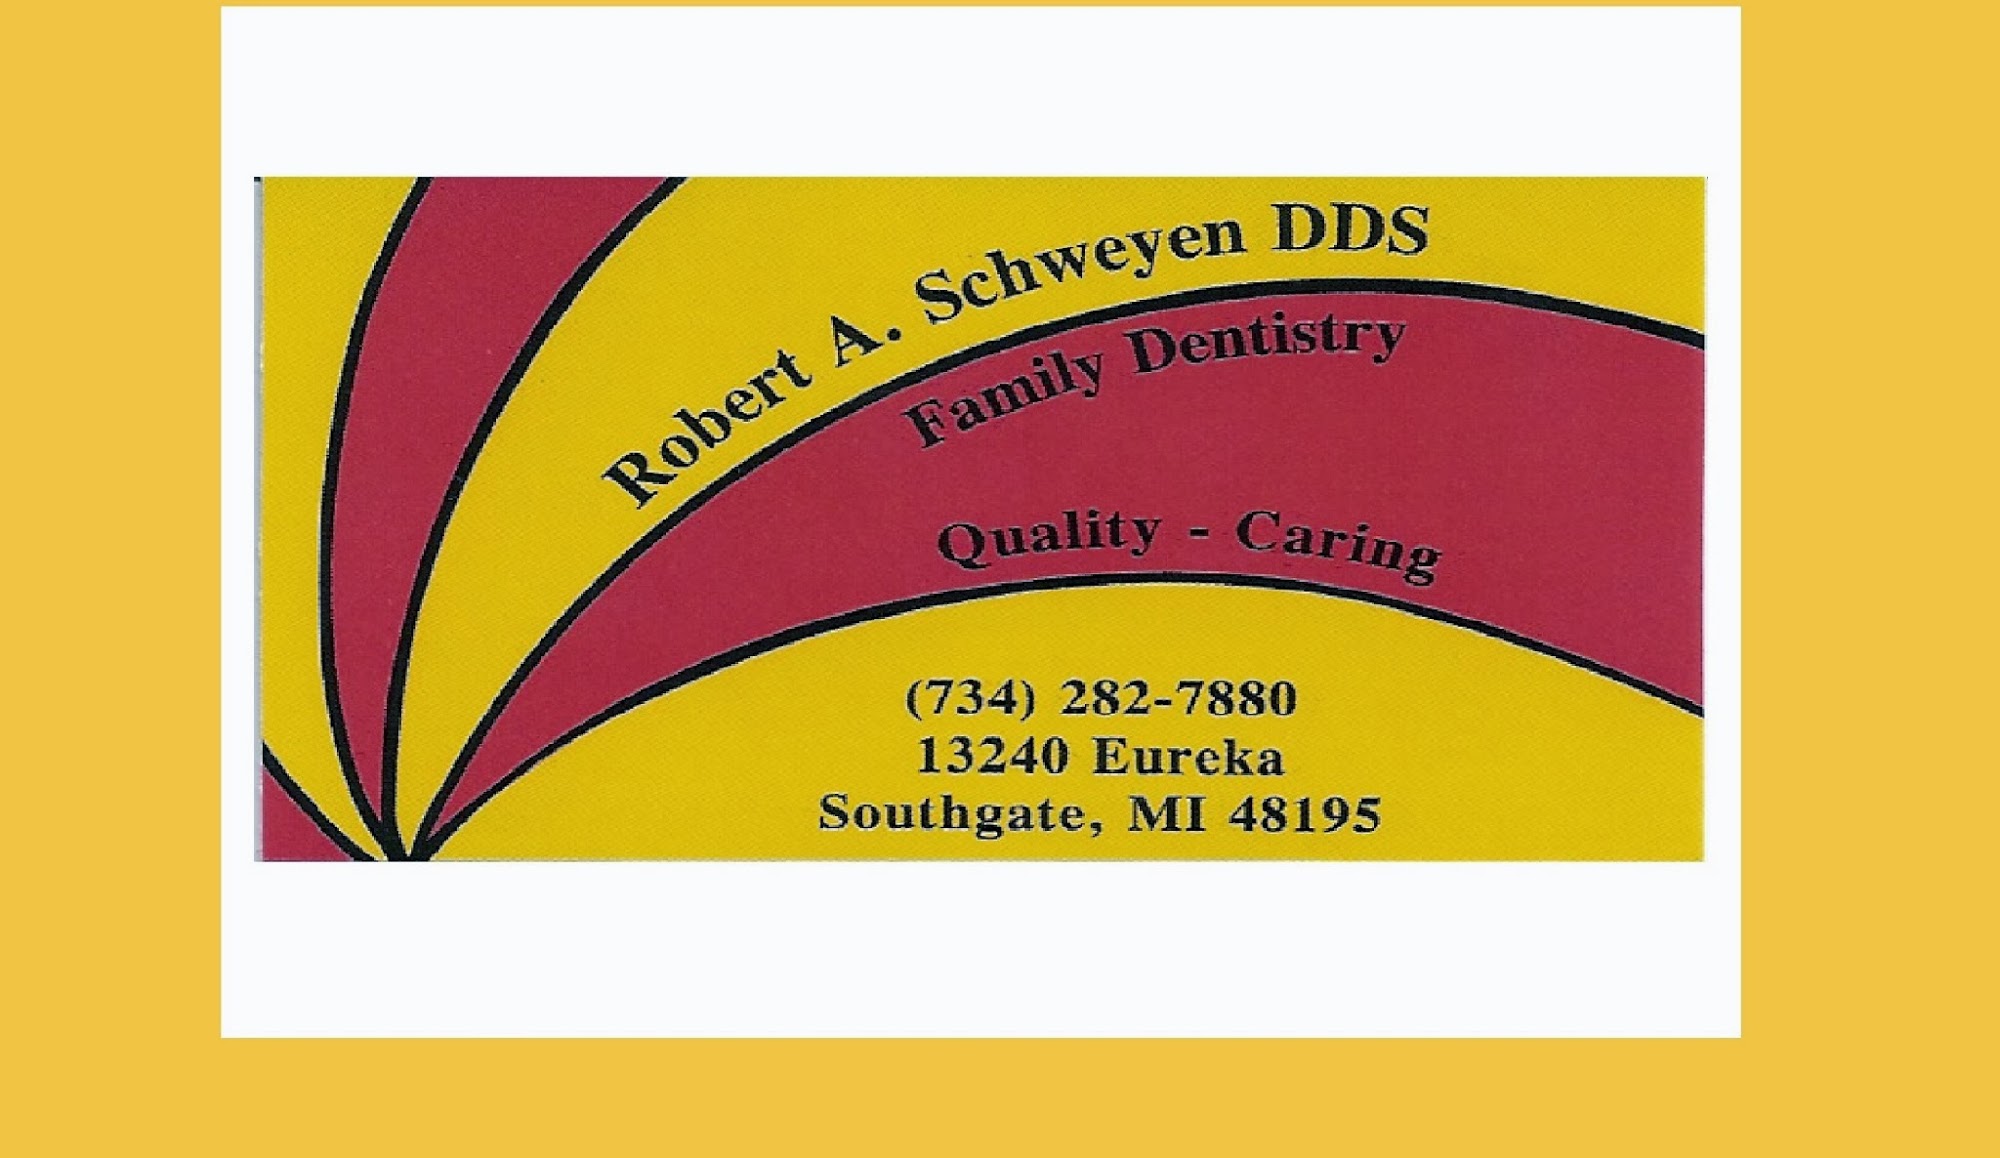 Robert A. Schweyen DDS Family dentistry